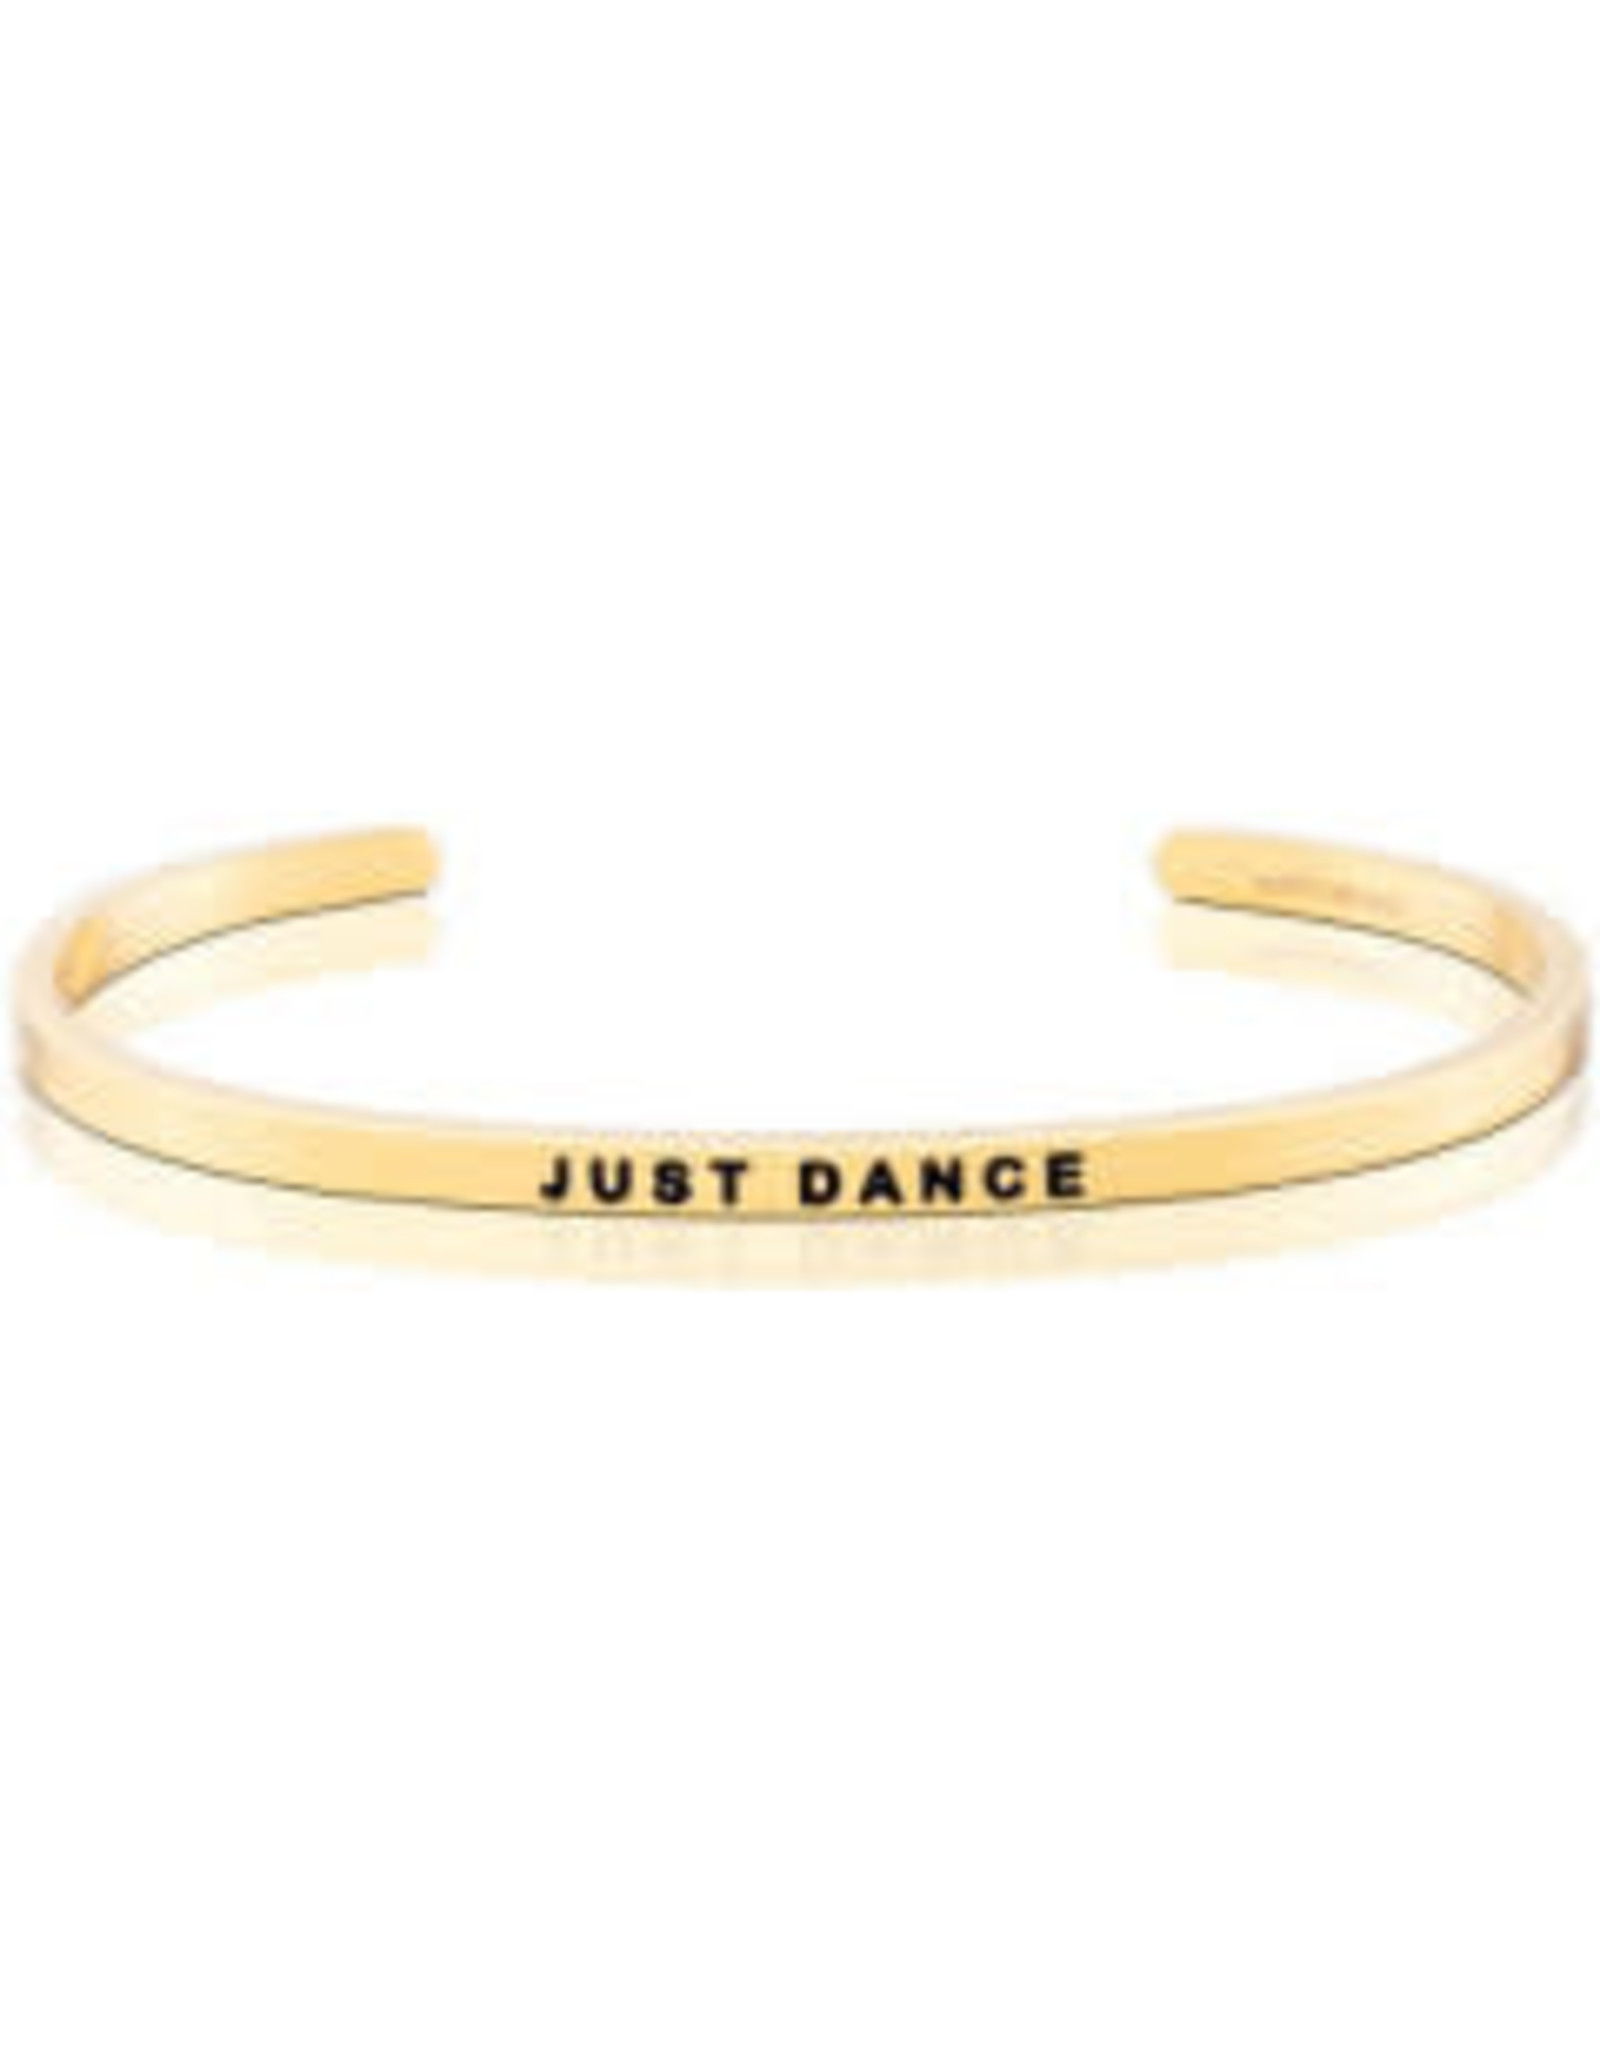 MantraBand MantraBand Bracelet, Just Dance